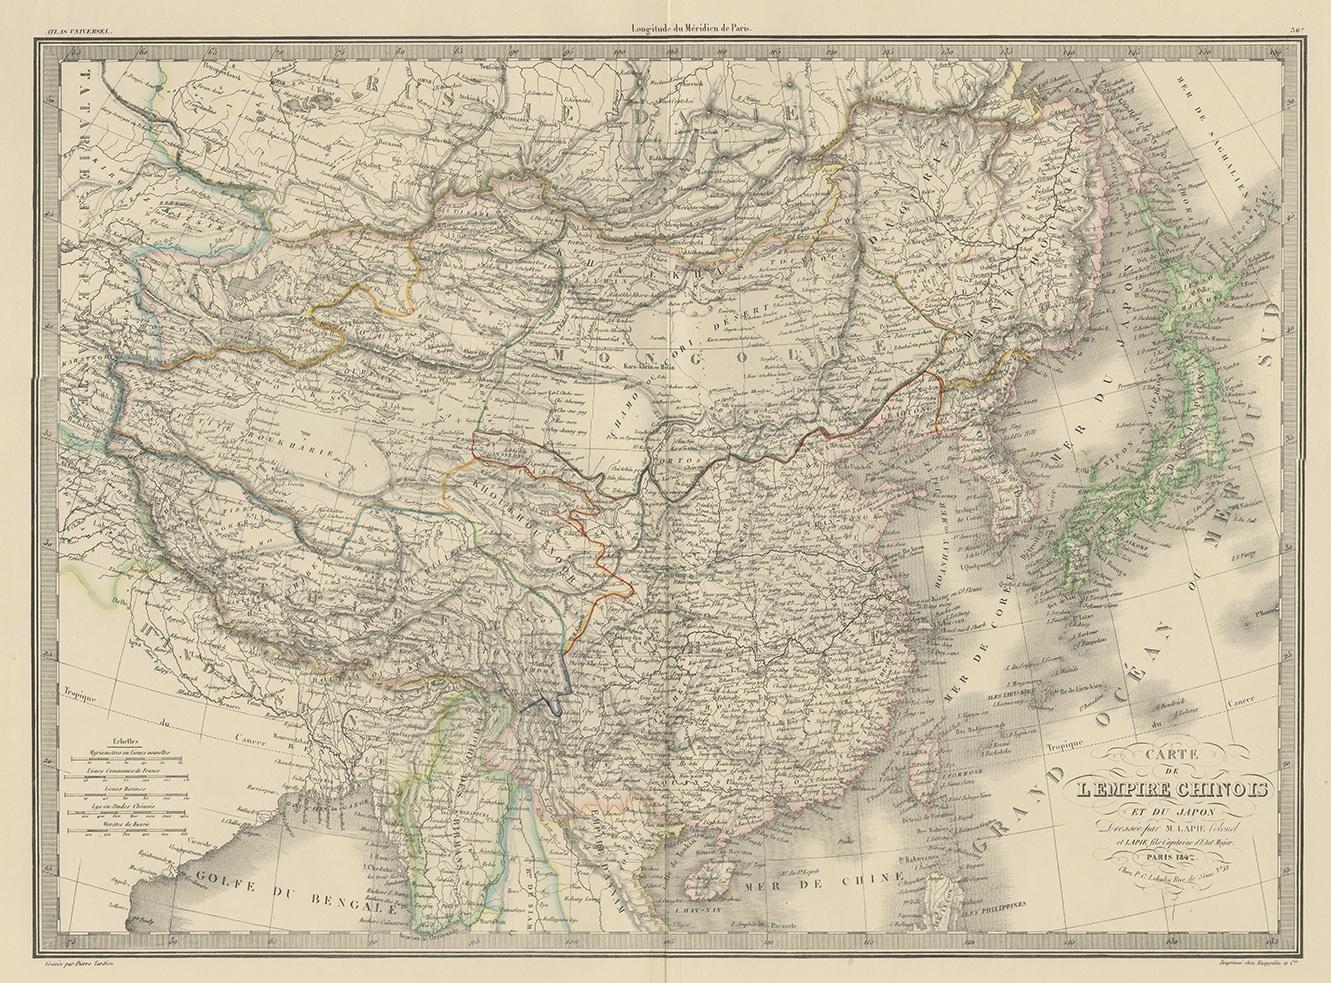 Antique map titled 'Carte de L'Empire Chinois et du Japon'. Map of the Chinese Empire (China) and Japan. This map originates from 'Atlas universel de géographie ancienne et moderne (..)' by Pierre M. Lapie and Alexandre E. Lapie. Pierre M. Lapie was